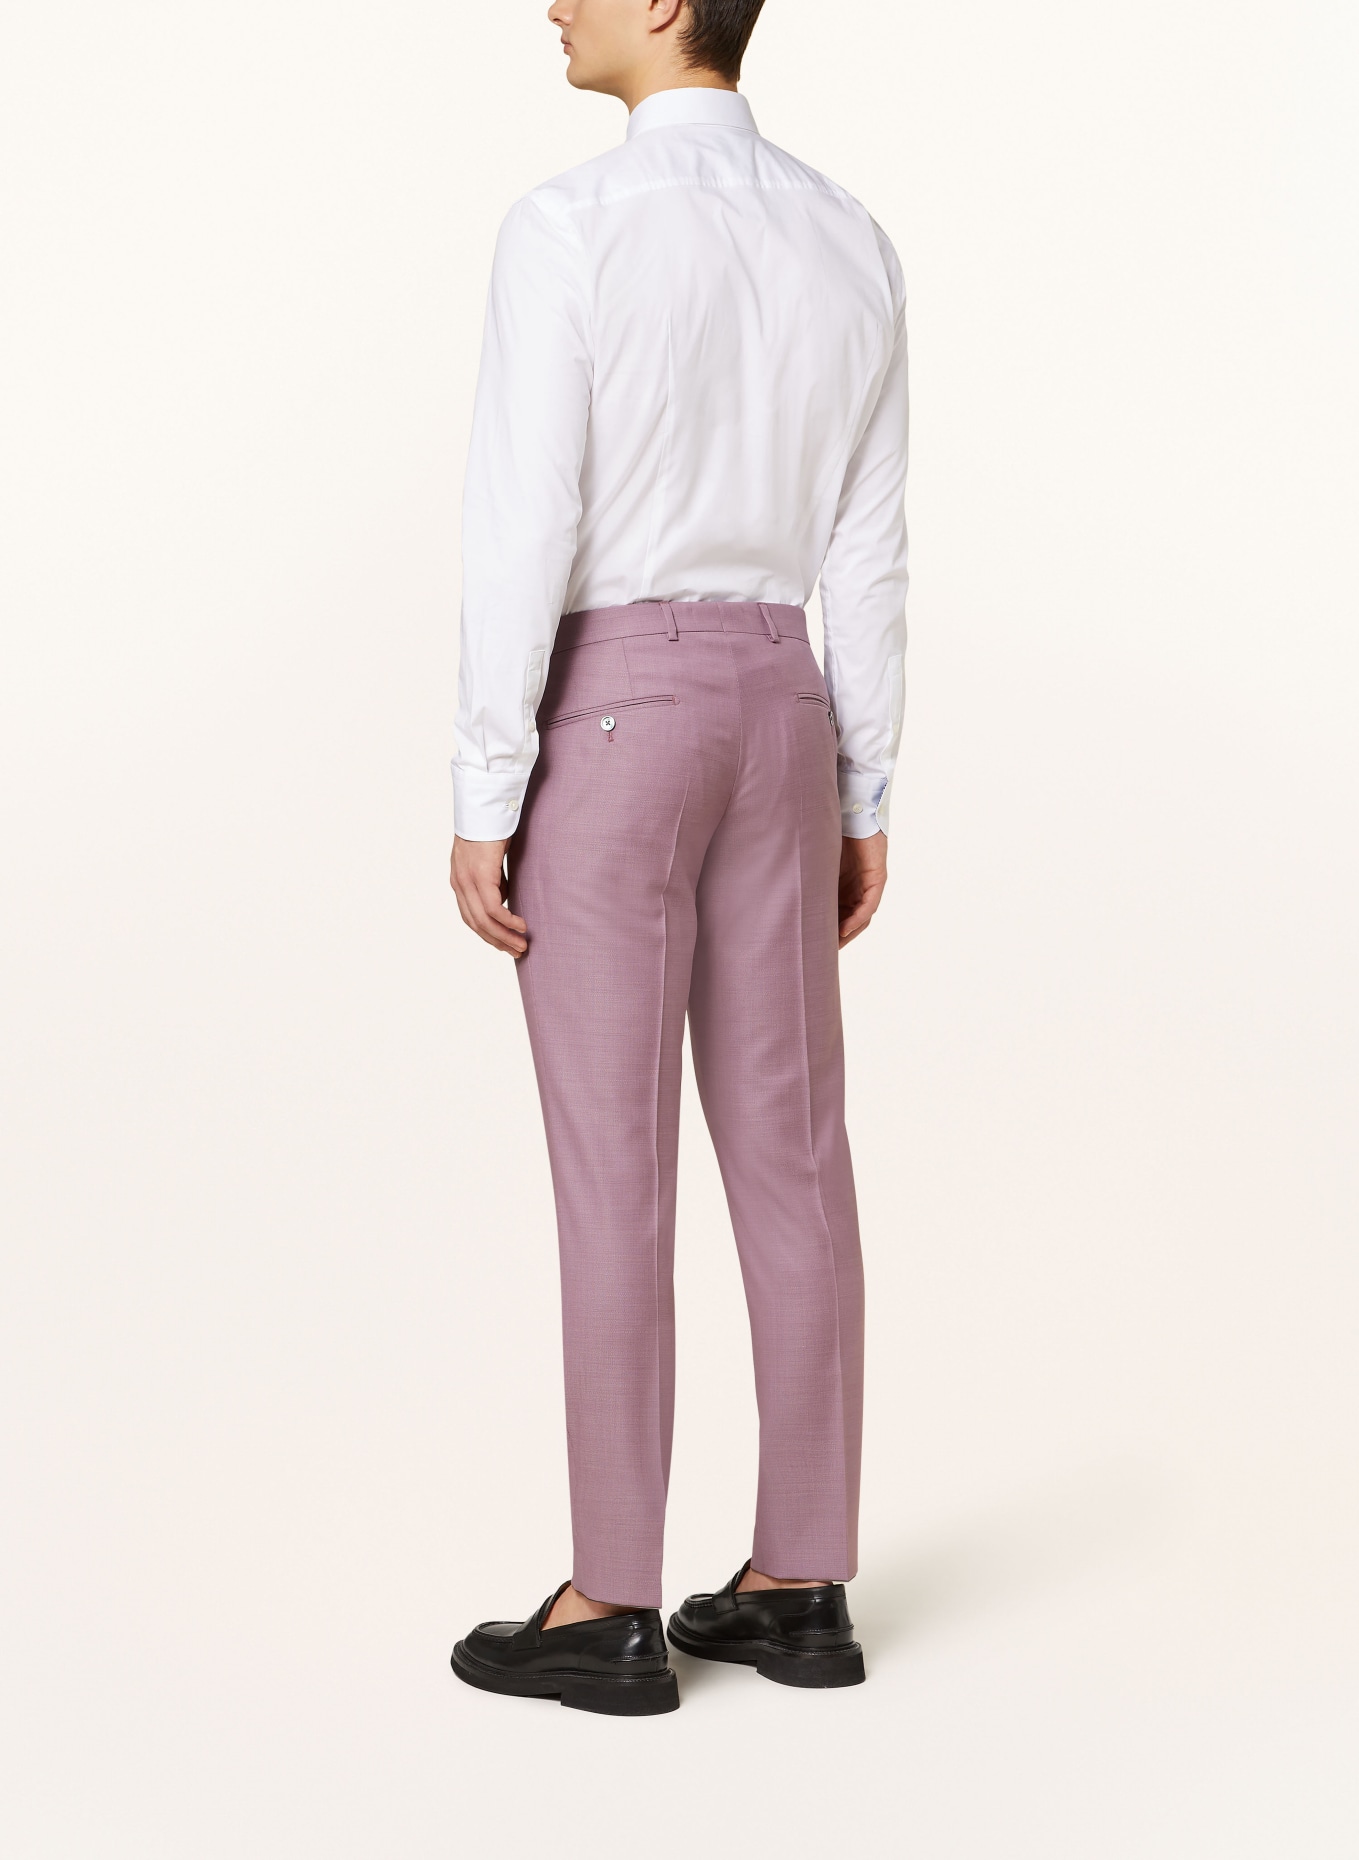 JOOP! Suit trousers BLAYR slim fit, Color: 650 Dark Pink                  650 (Image 4)